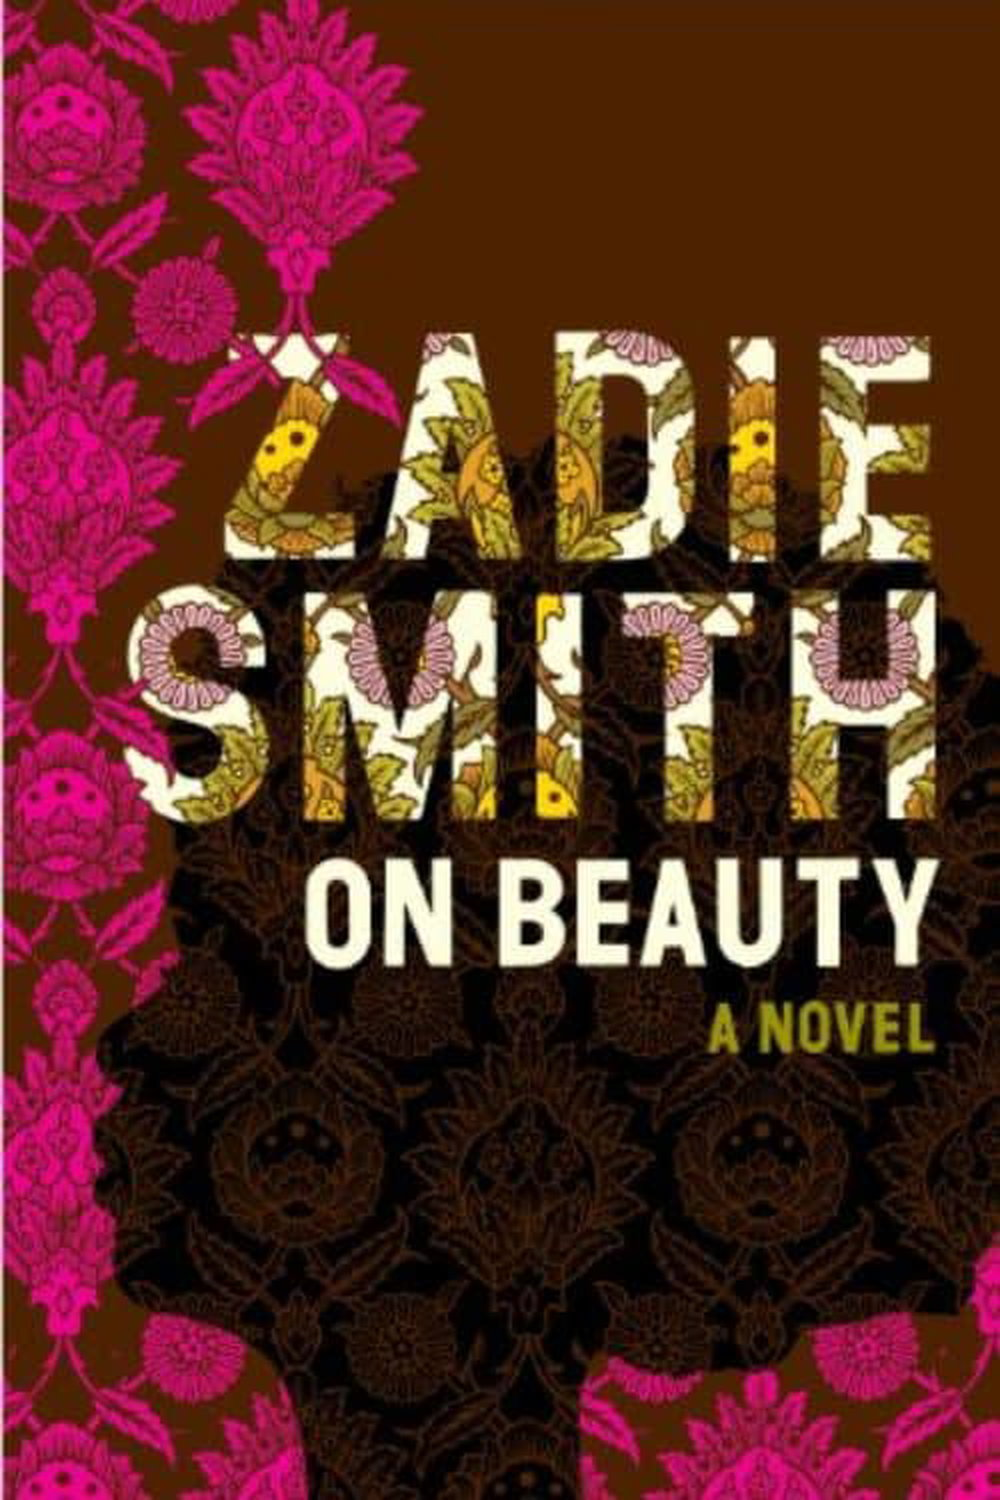 10 部以字母 O 开头的必读书籍 - Zadie Smith 的《论美》